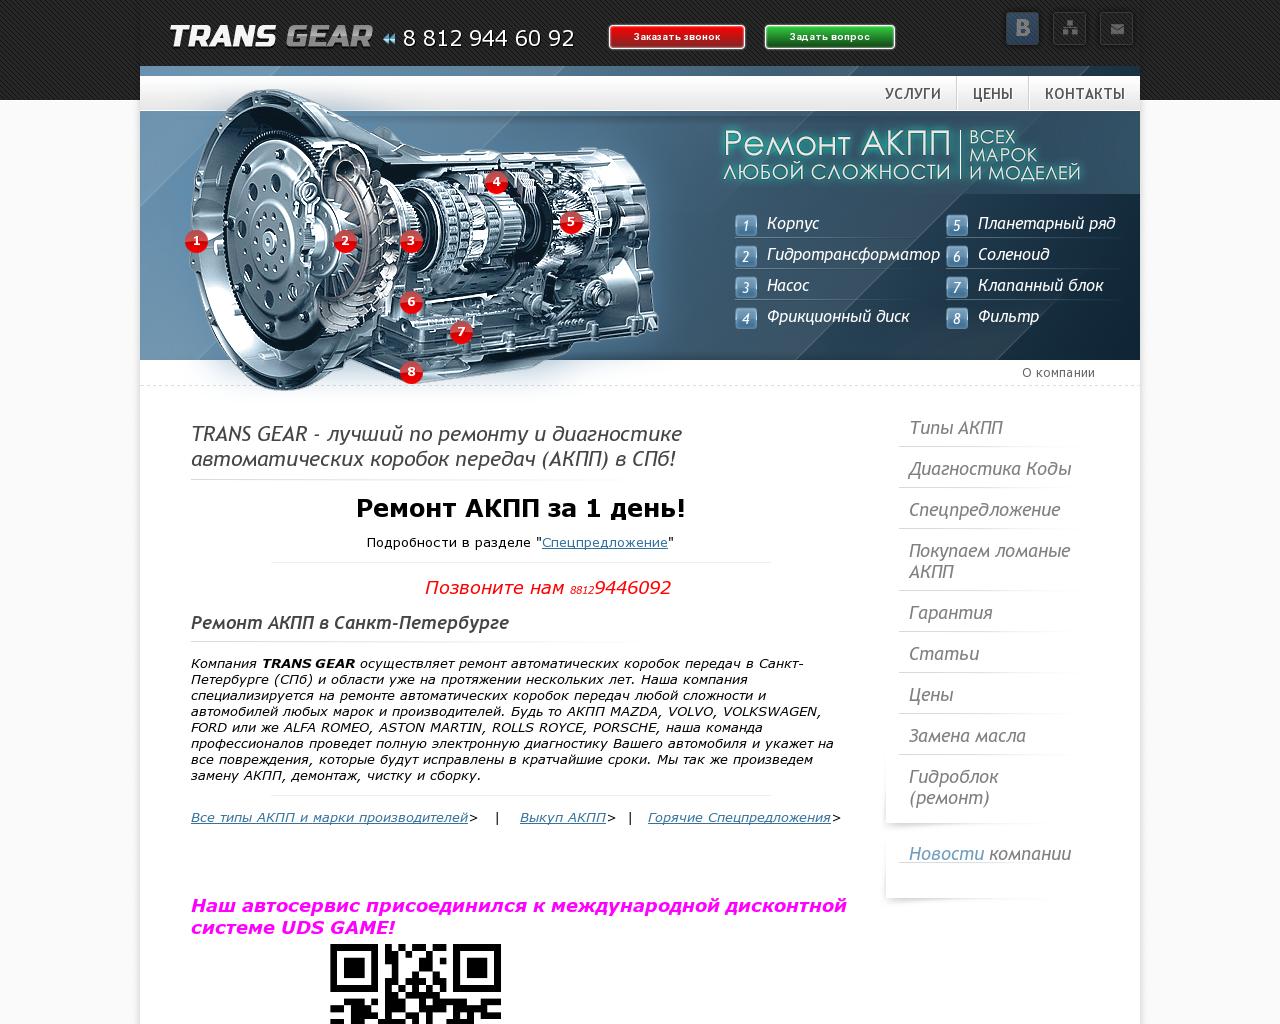 Изображение сайта trans-gear.ru в разрешении 1280x1024